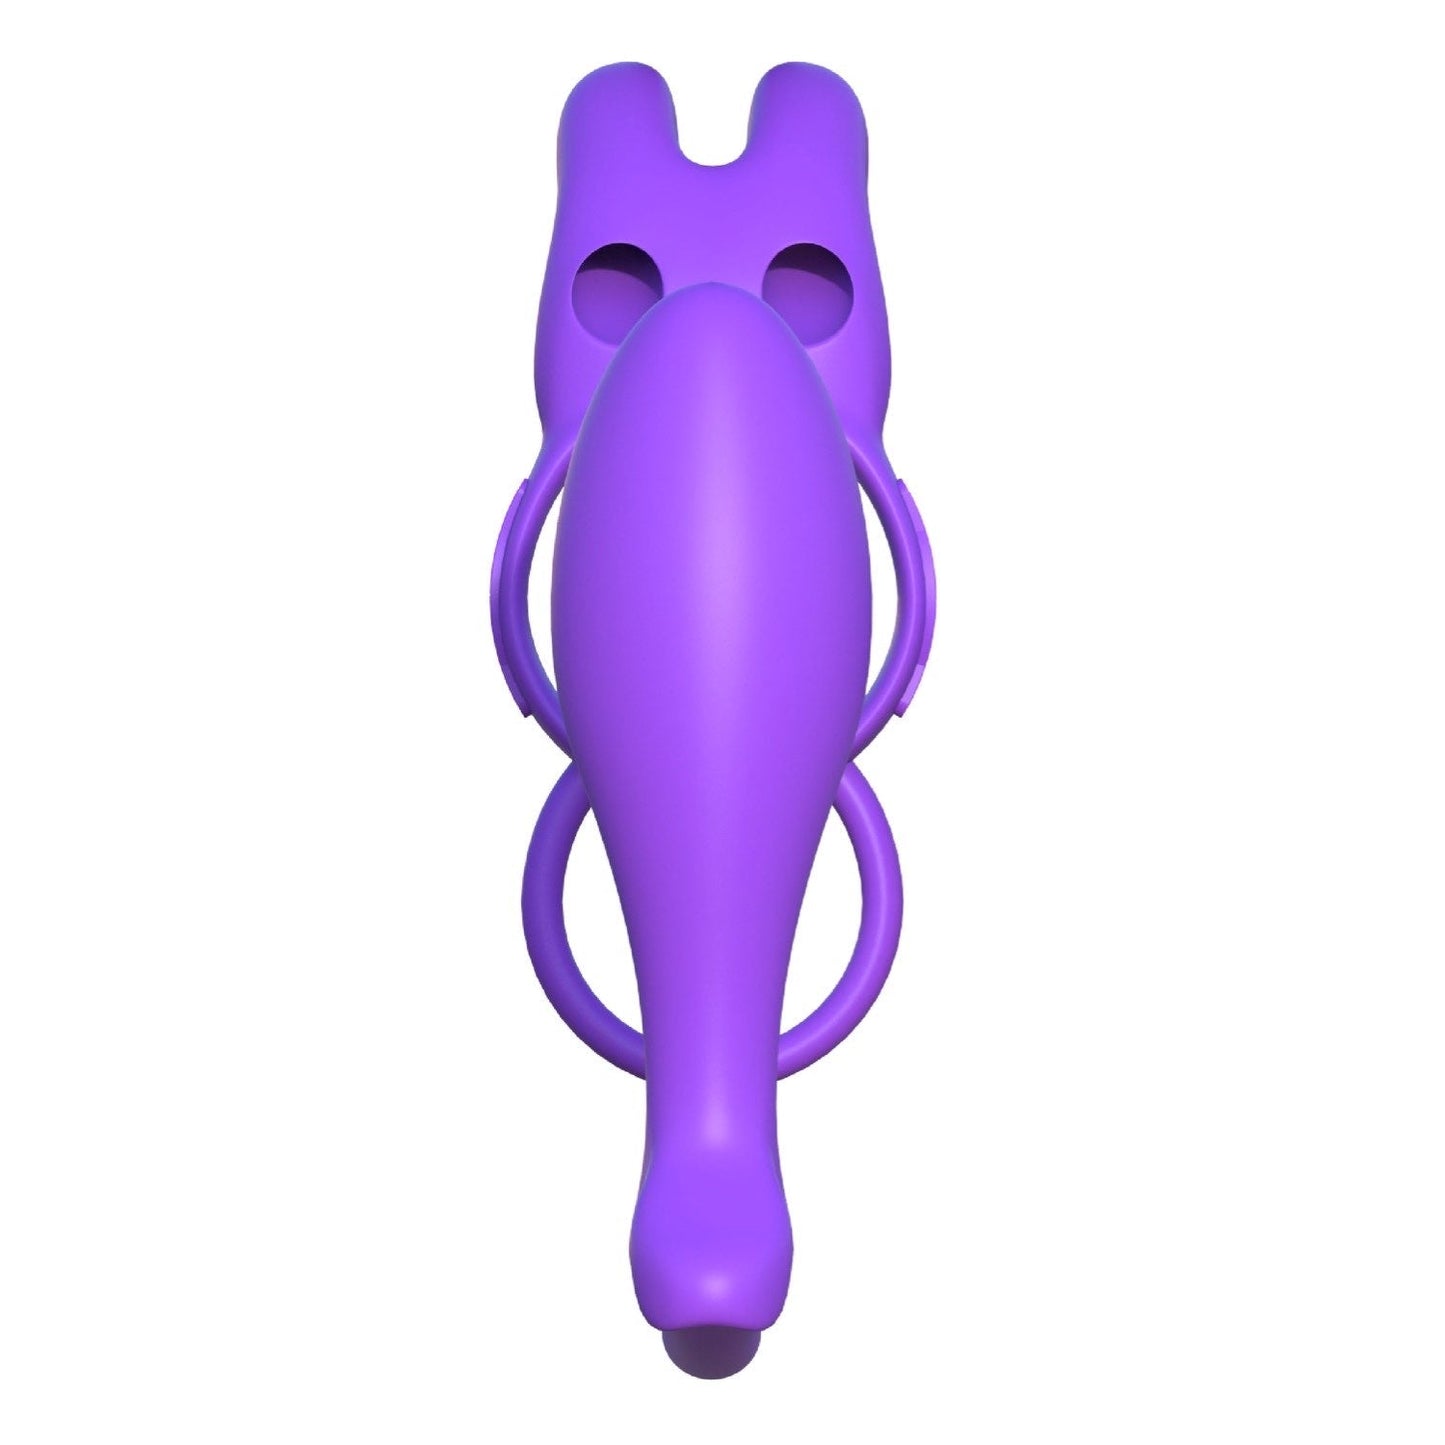 Fantasy C-ringz Ass-gasm Vibration Rabbit - 紫色振动公鸡环带肛门塞